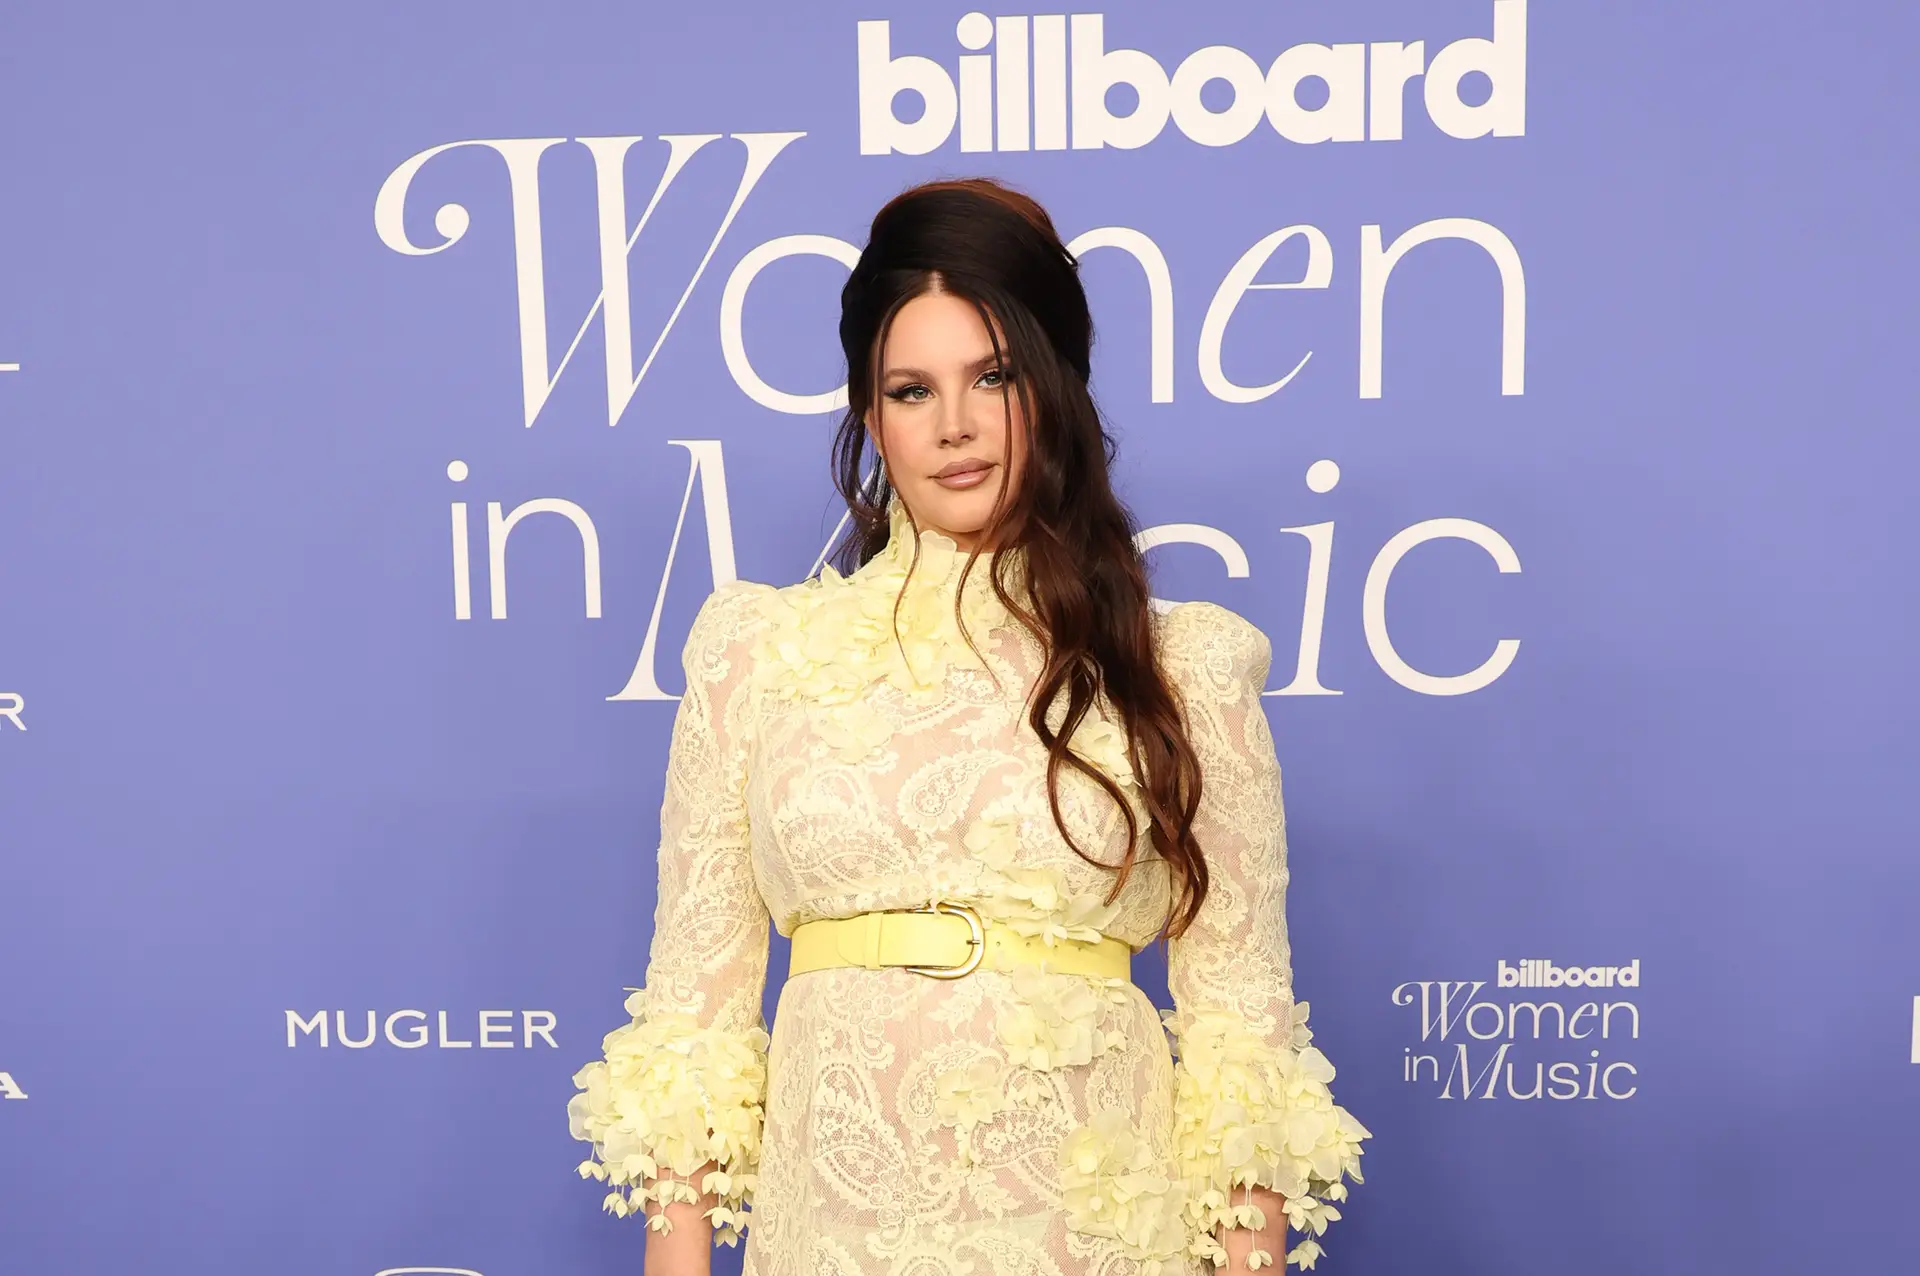 Lana Del Rey galardoada com um prémio para “artista visionária” em gala da  “Billboard” só para mulheres - Expresso